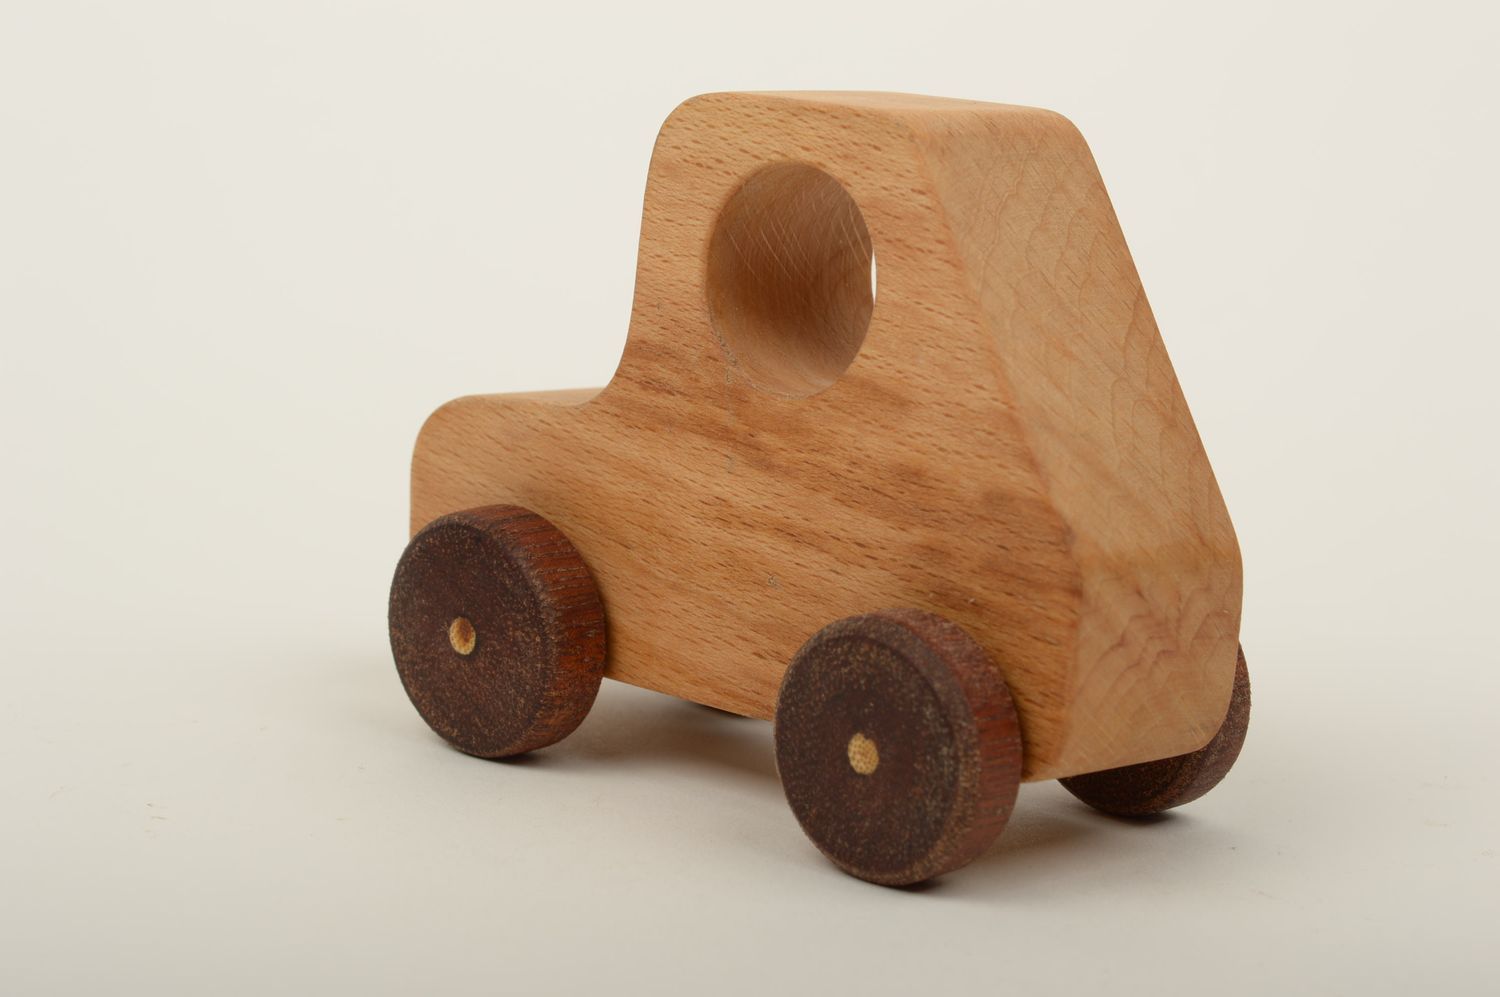 Spielzeug aus Holz handgefertigt Auto aus Holz Holzspielzeug Öko in Braun foto 3